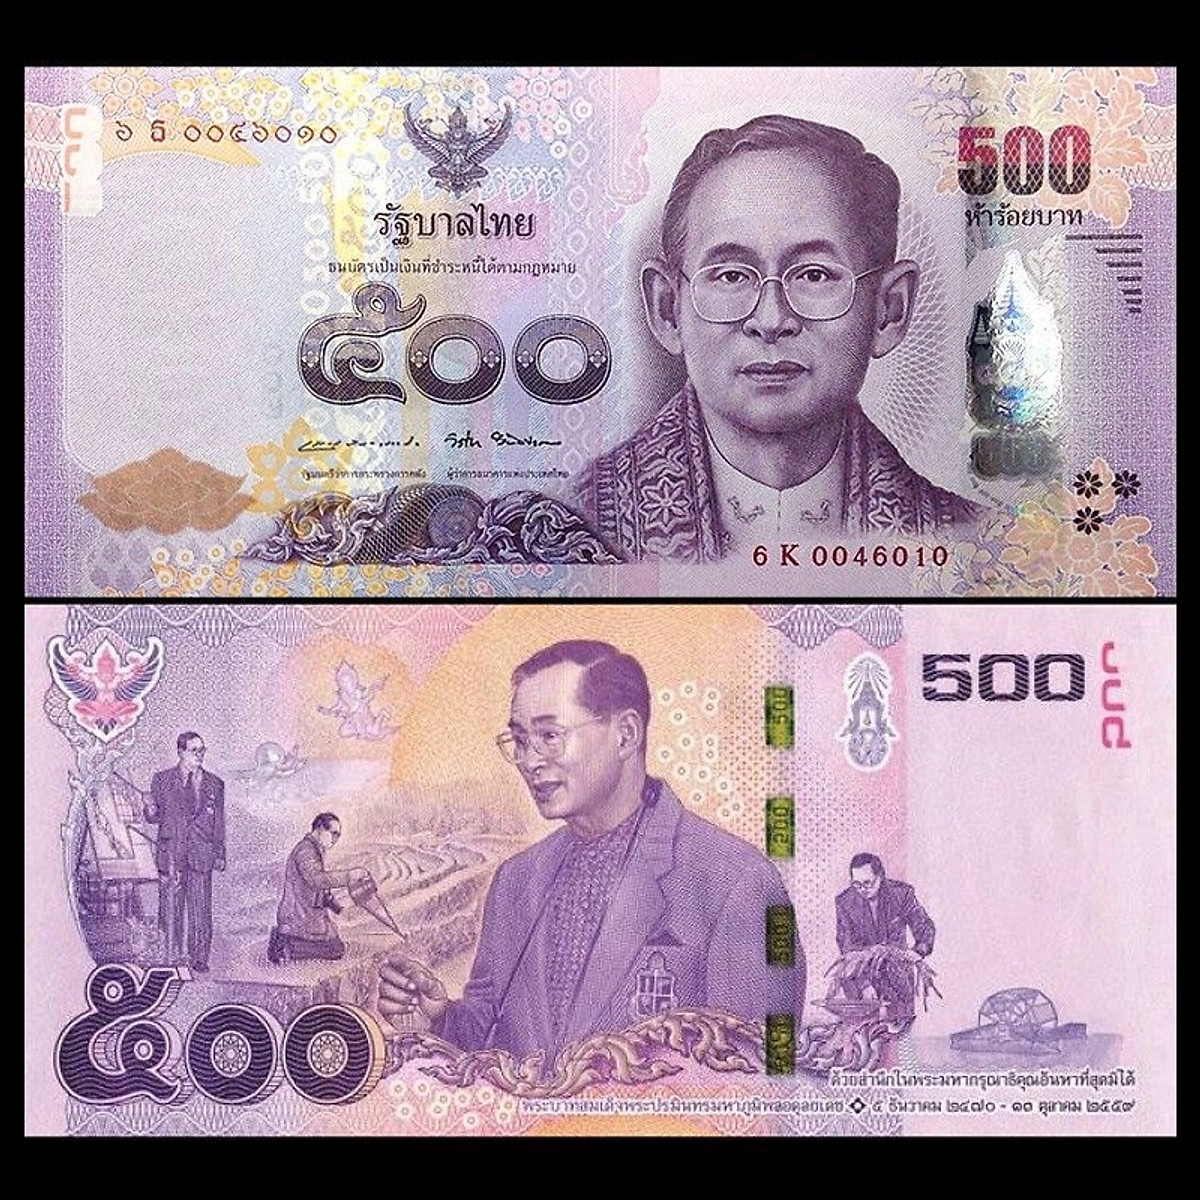 Hãy tìm hiểu nhiều hơn về các đặc điểm của tờ tiền 500 Baht Thái Lan, từ kích thước, chất liệu cho tới giá trị trên thị trường.